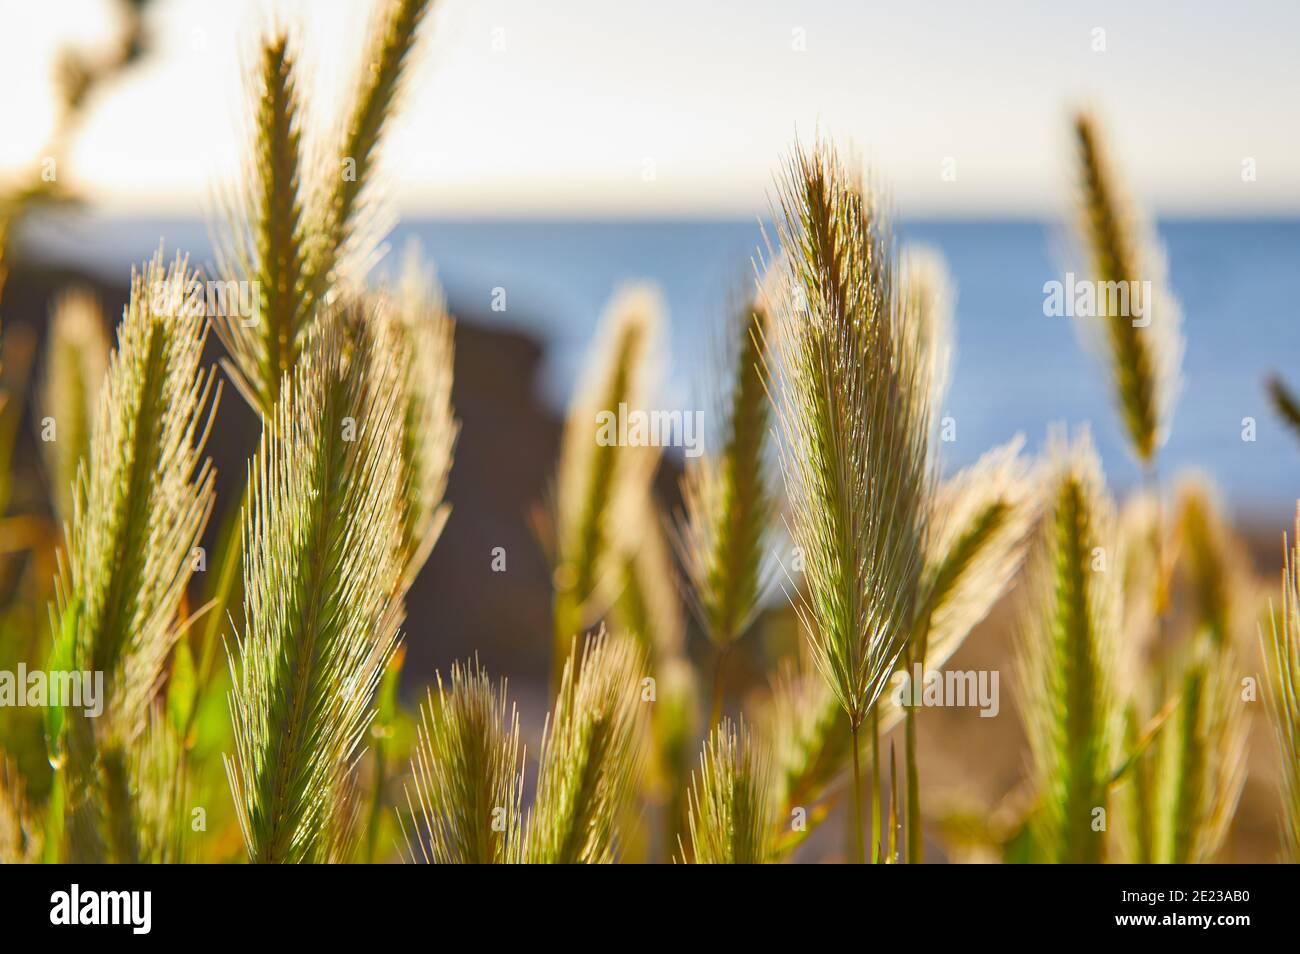 Immagine di teste di semi d'erba con luce solare retroilluminata con mare fuori fuoco. Profondità di campo bassa, fuoco selettivo Foto Stock